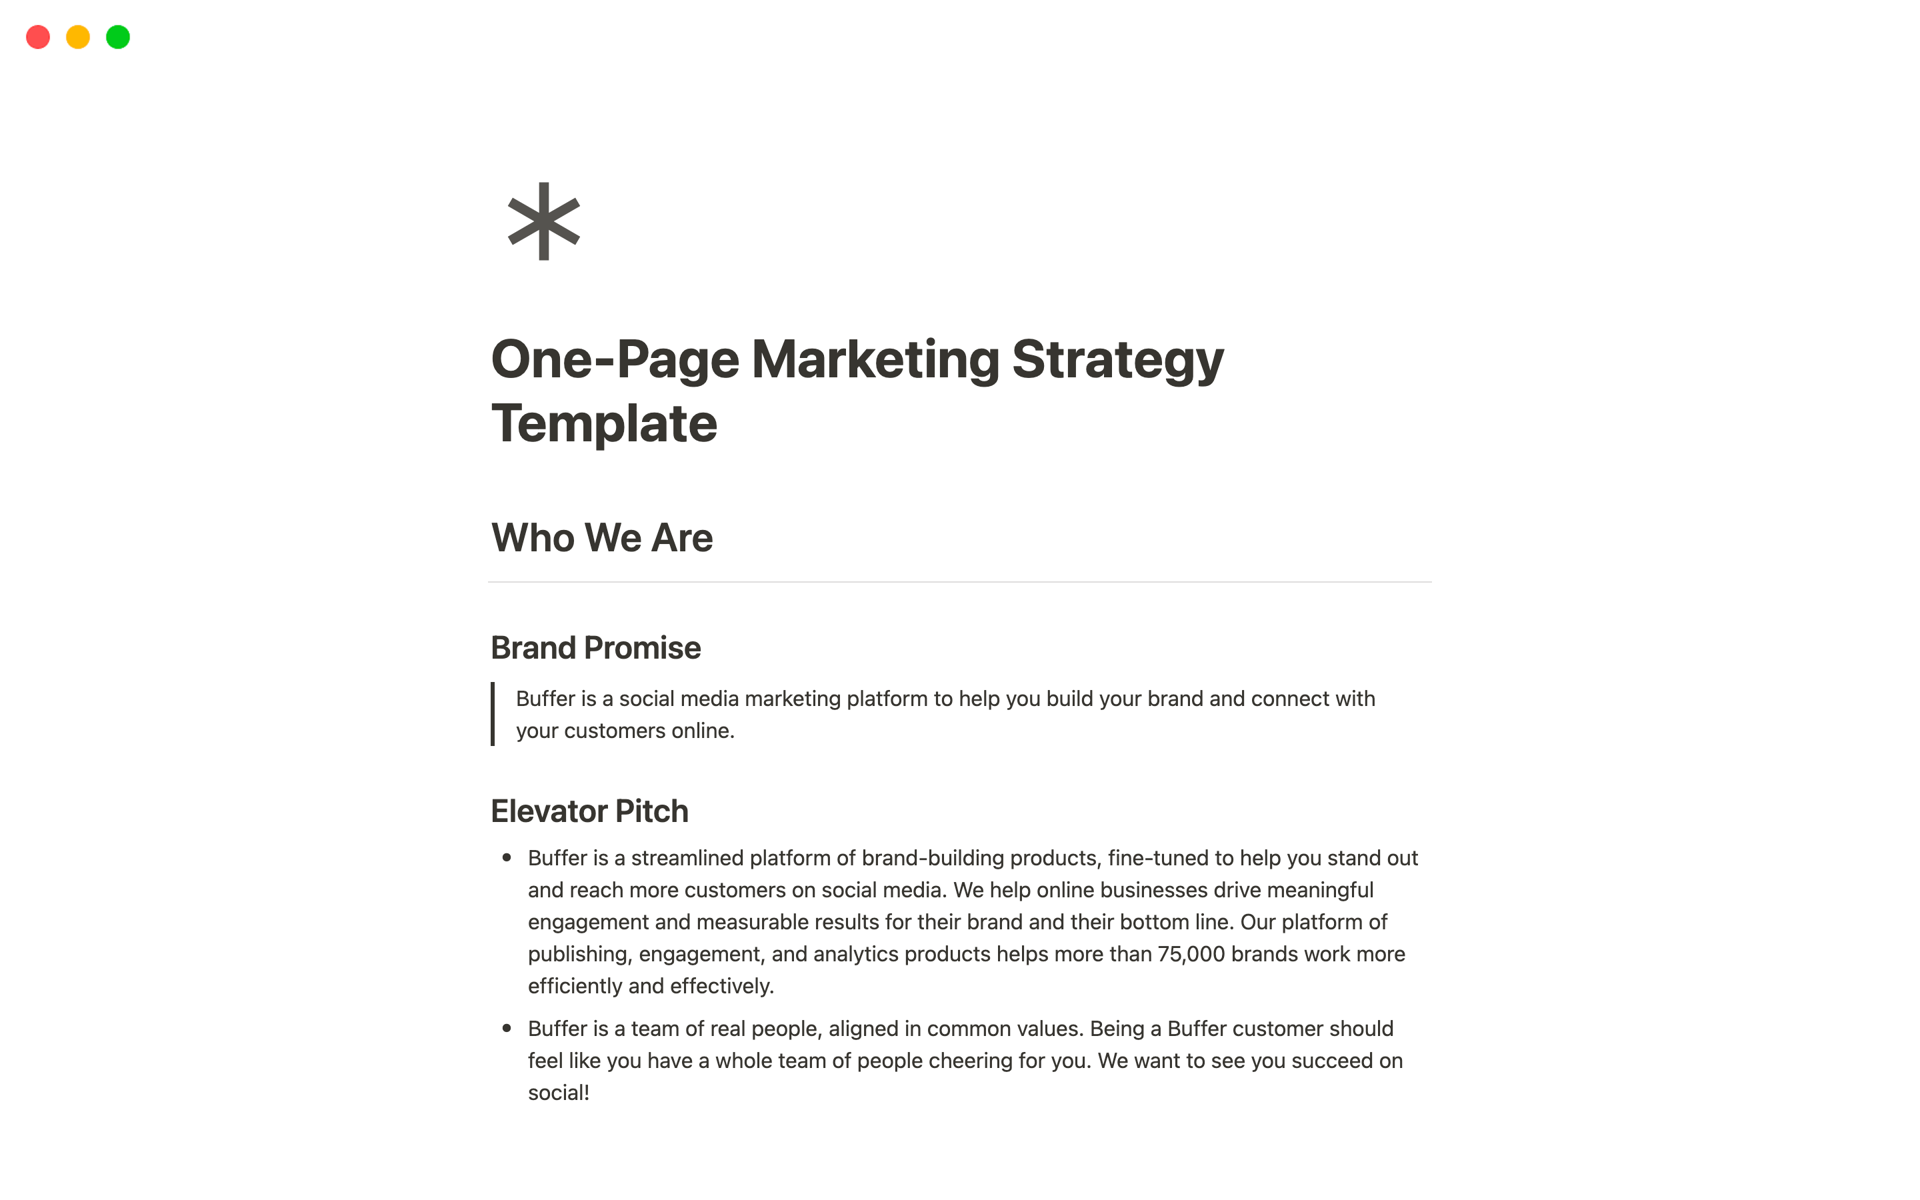 Uma prévia do modelo para One-Page Marketing Strategy